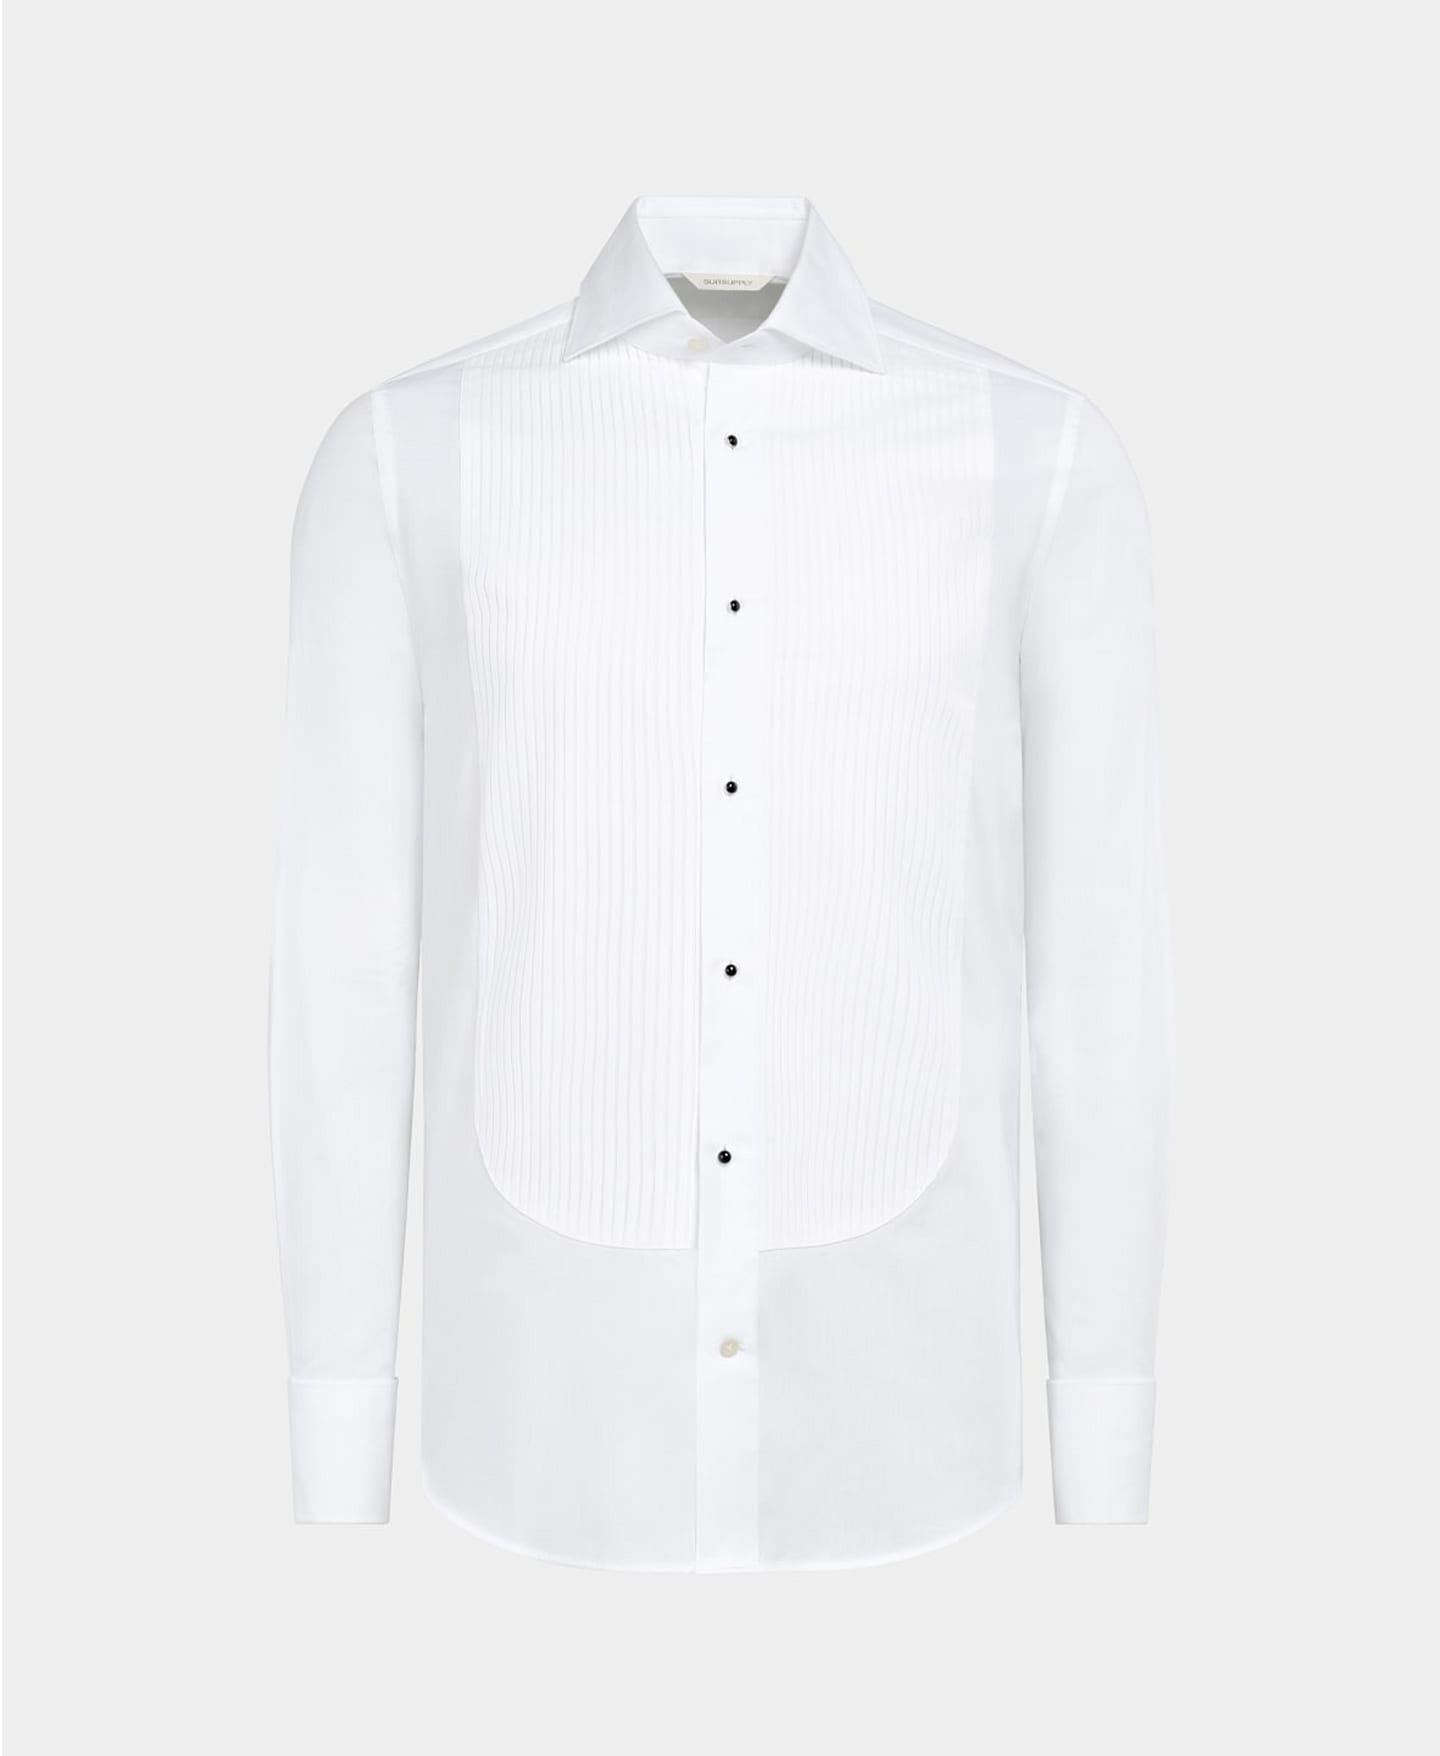 Camicia da smoking bianca con petto plissettato e bottoni a pressione neri in smalto.